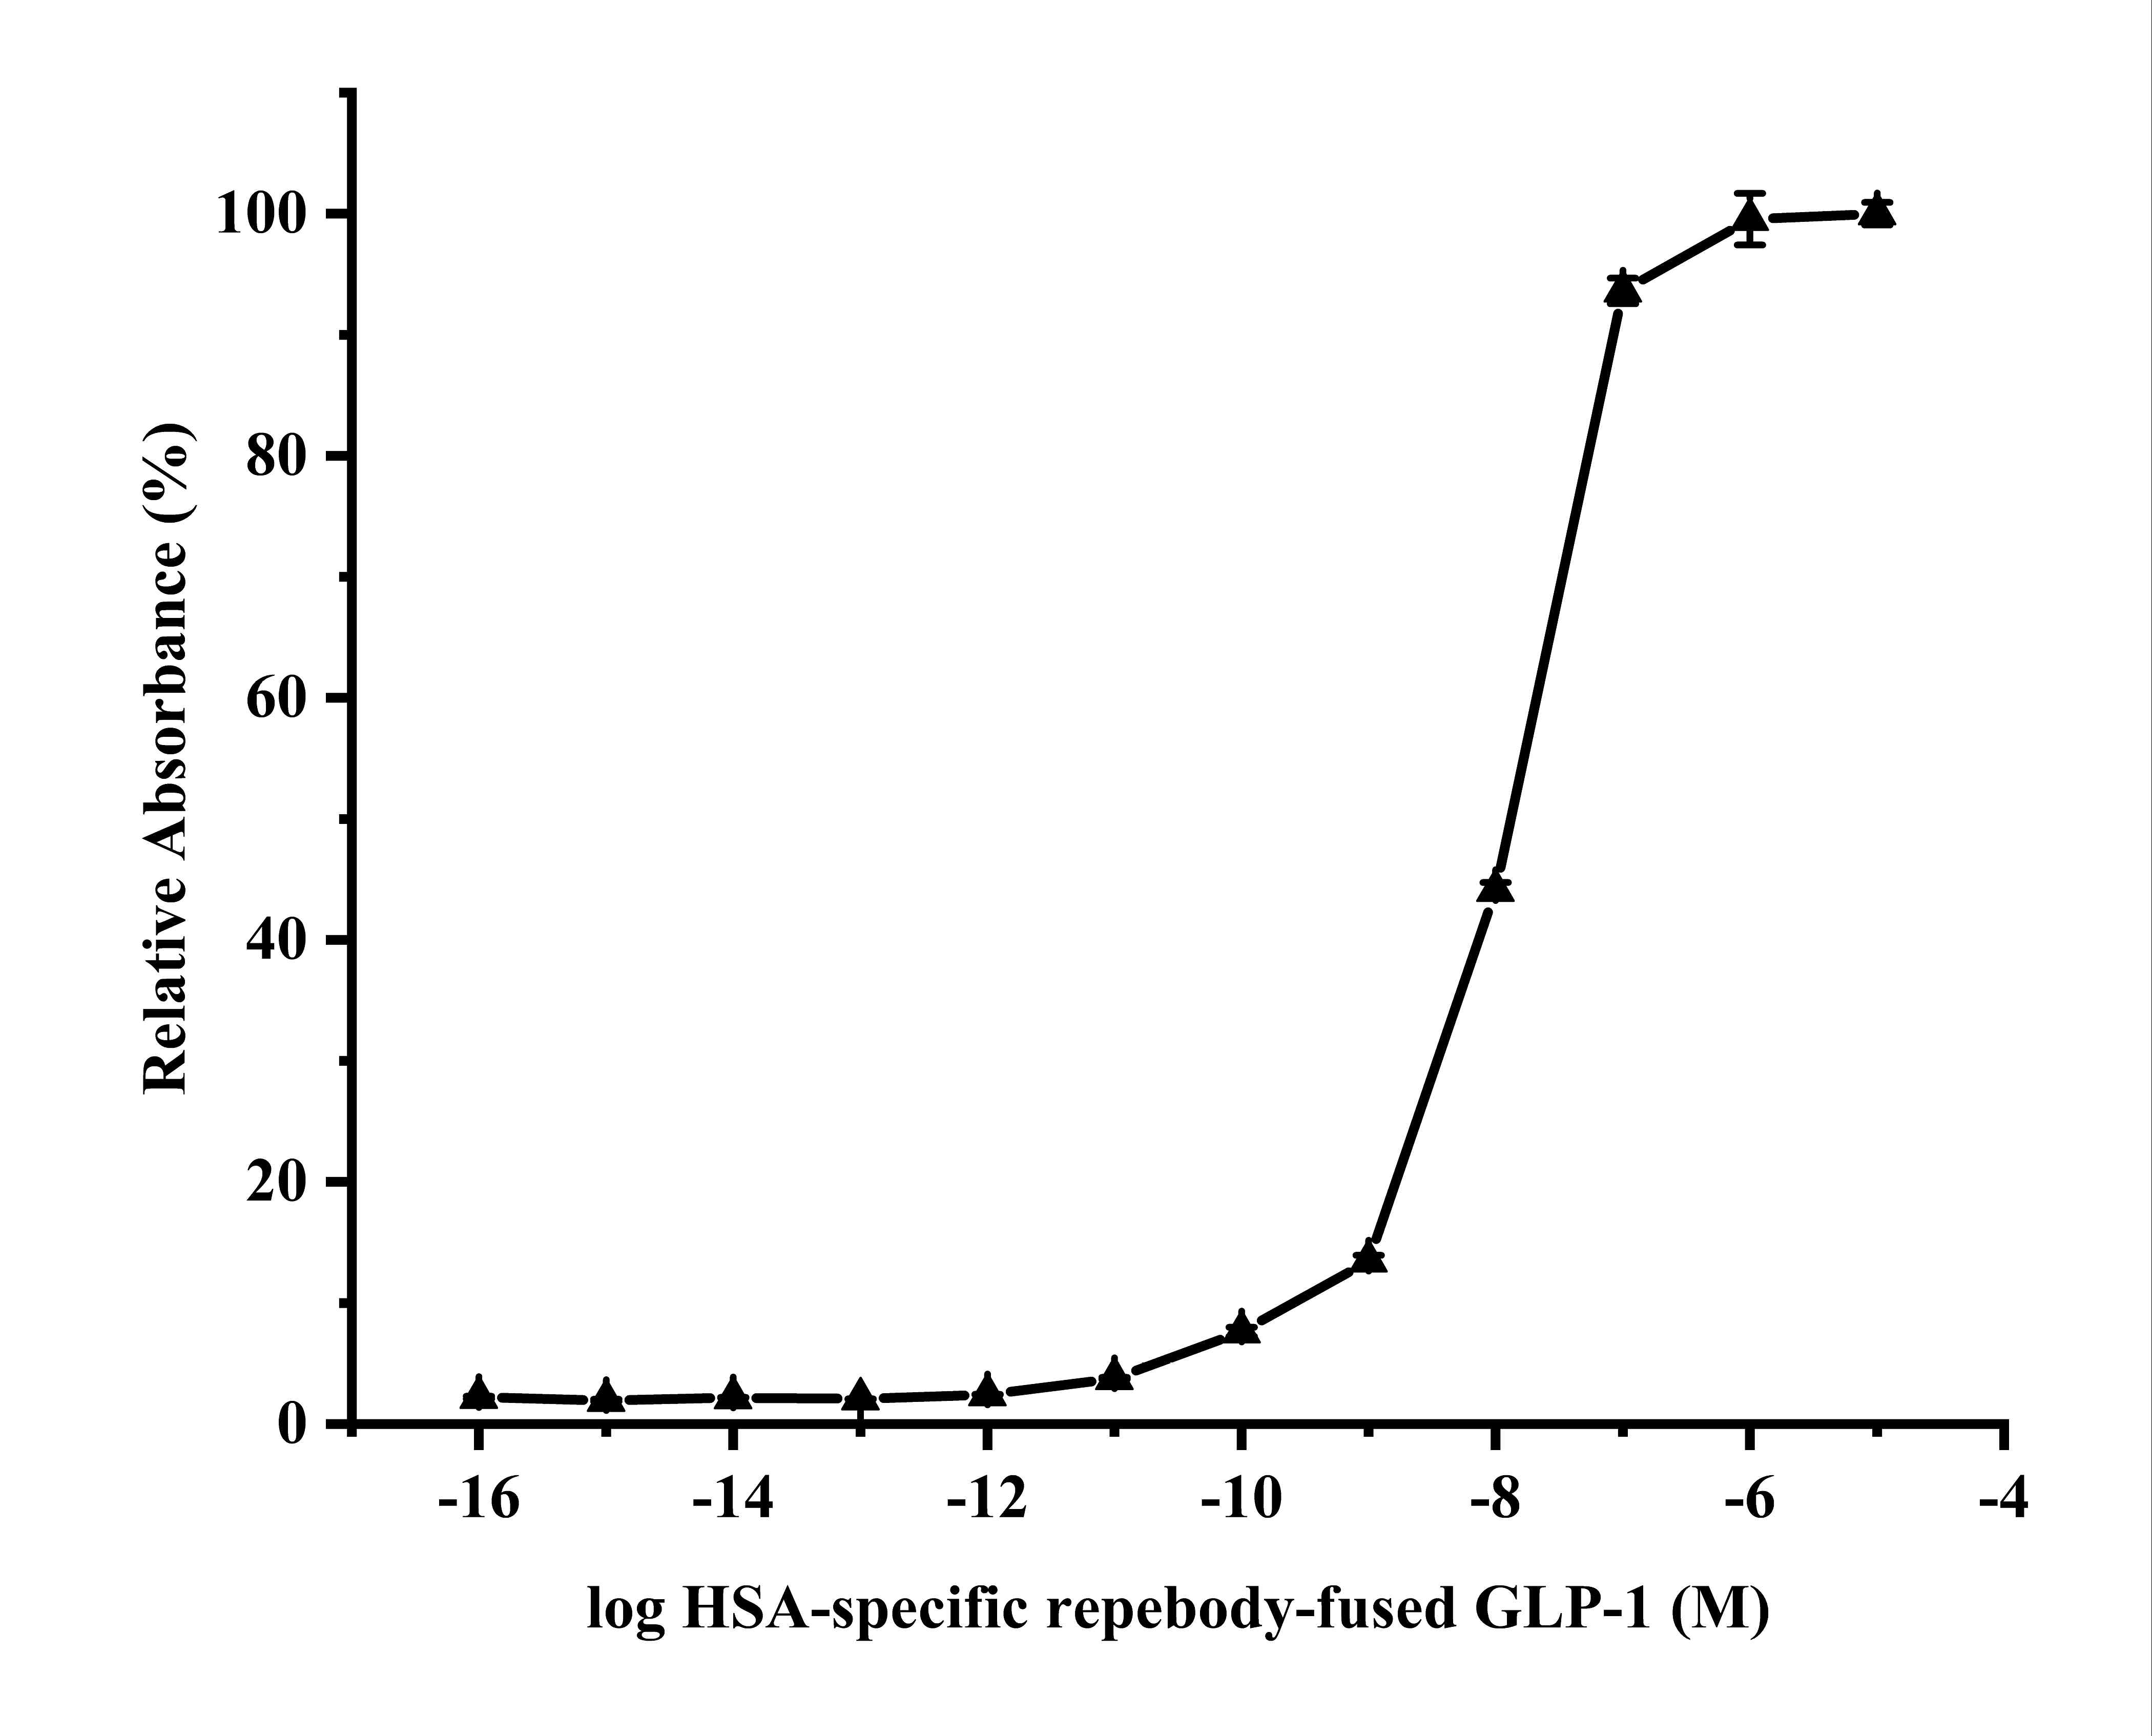 리피바디-GLP-1 접합체의 INS-1 세포막에 있는 GLP-1 수용체에 대한 결합력